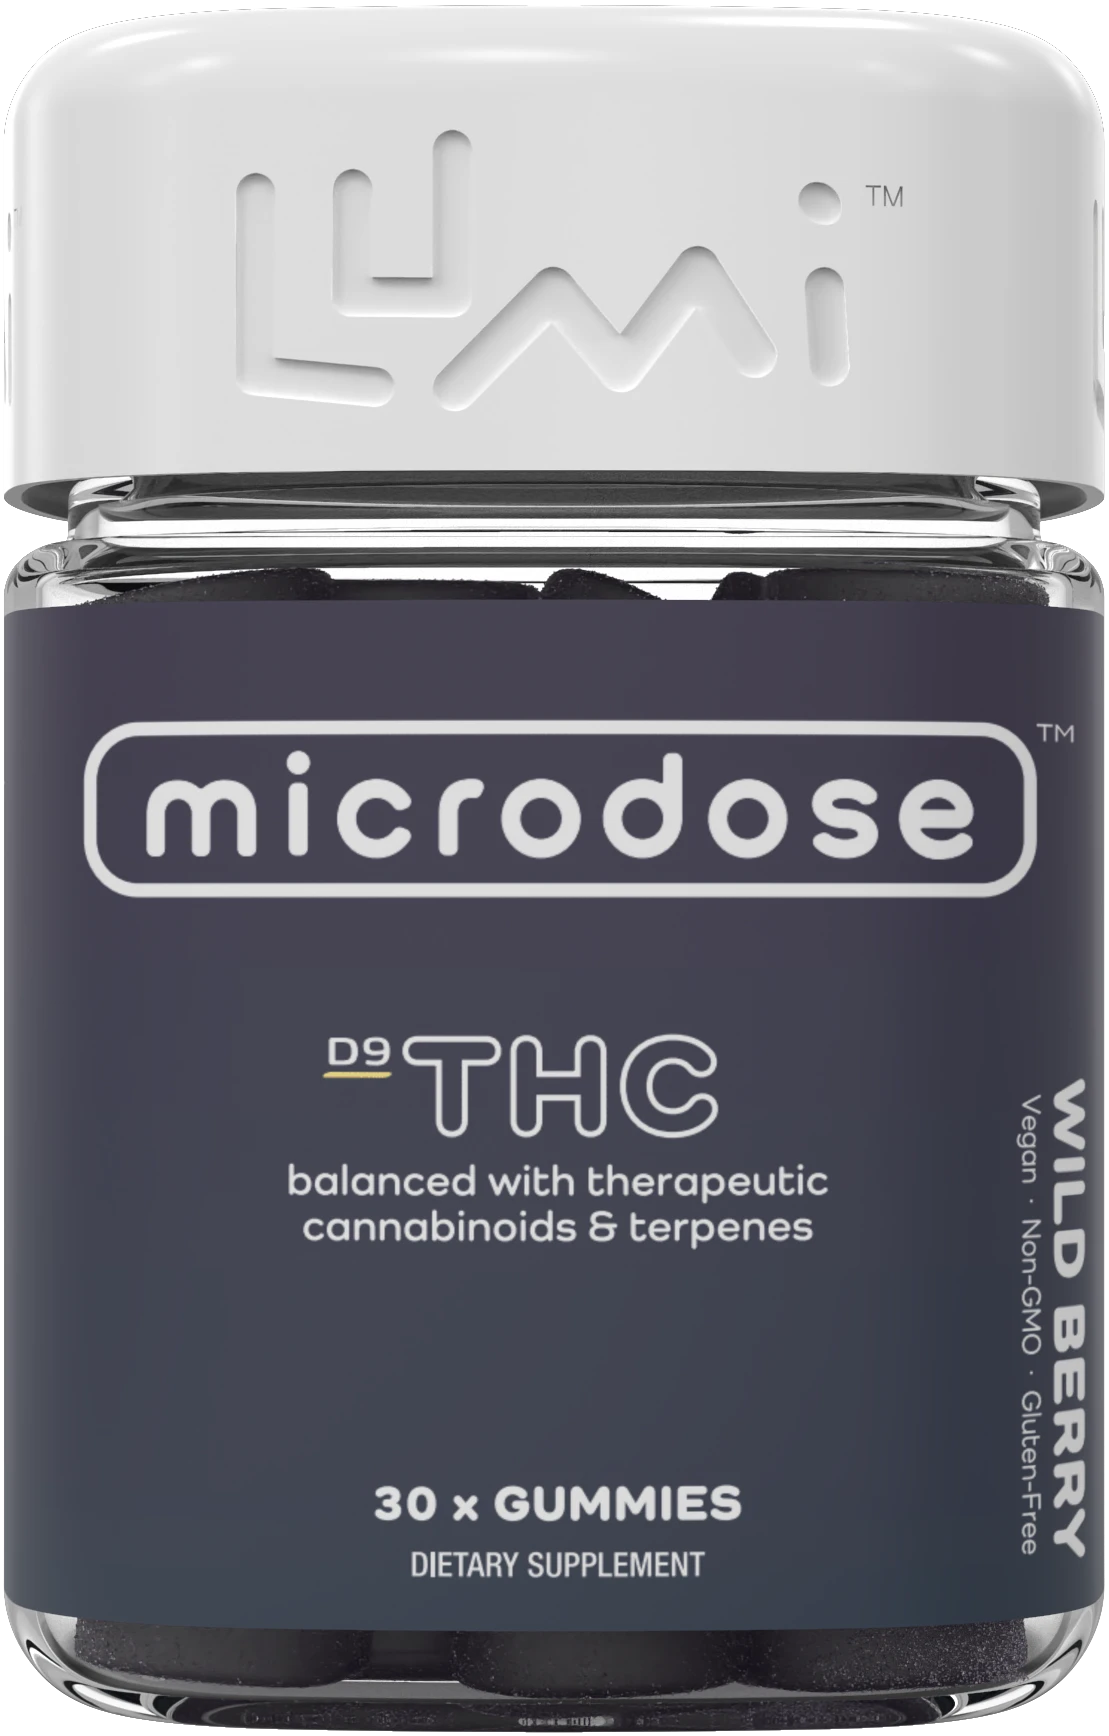 Cod promoțional Microdose 